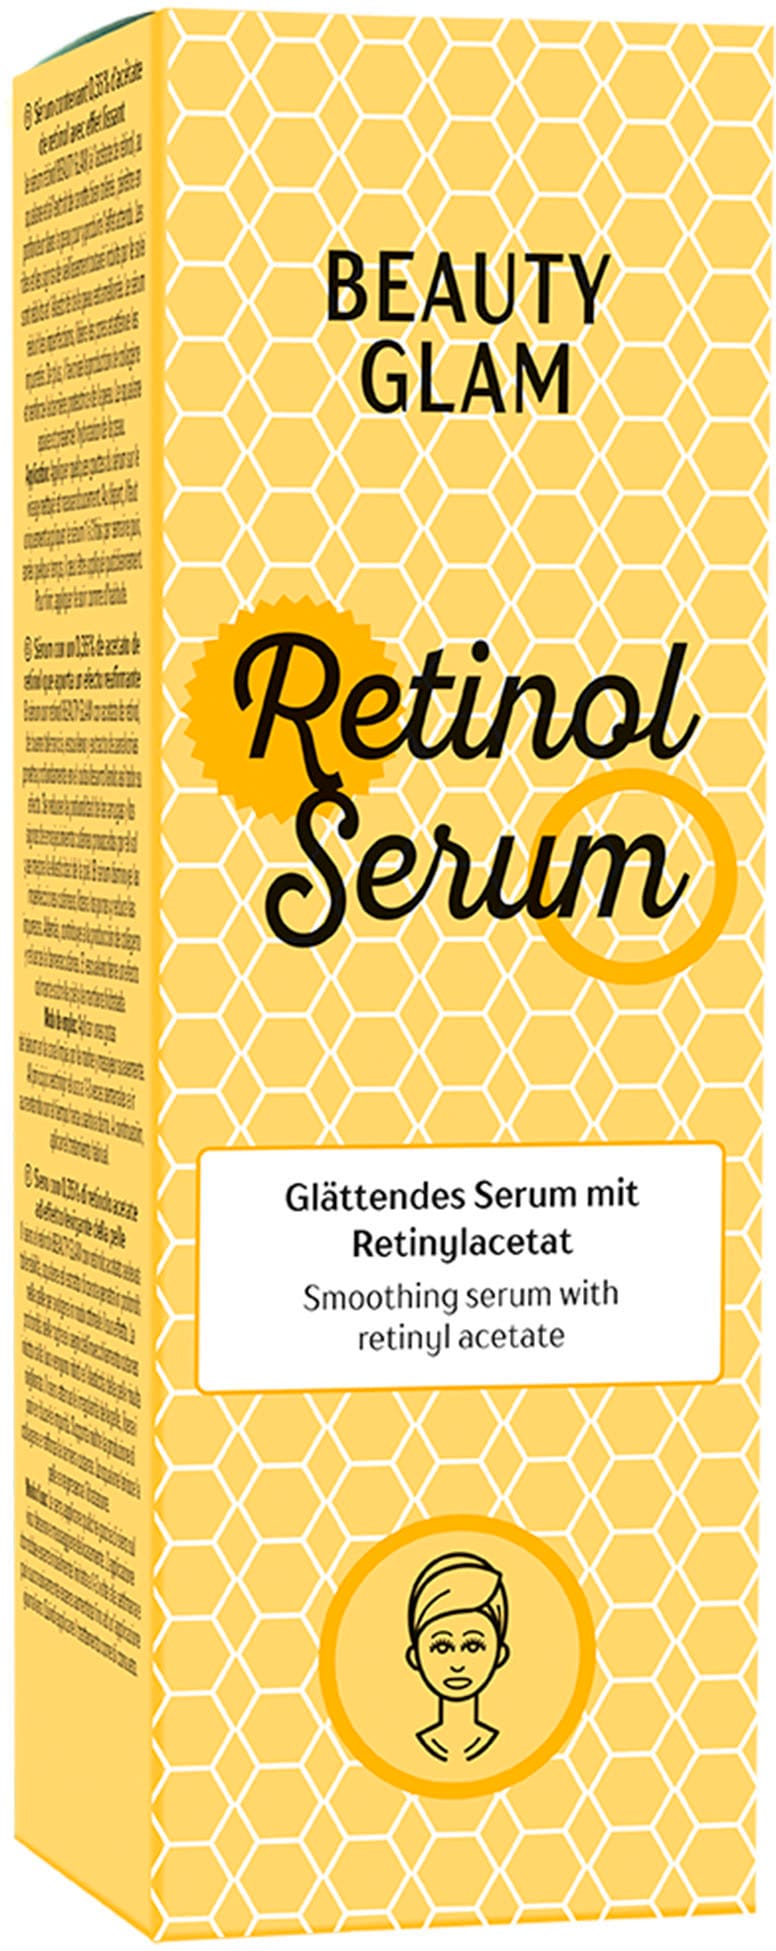 BEAUTY GLAM Gesichtsserum »Retinol Serum« Shop OTTO im Online